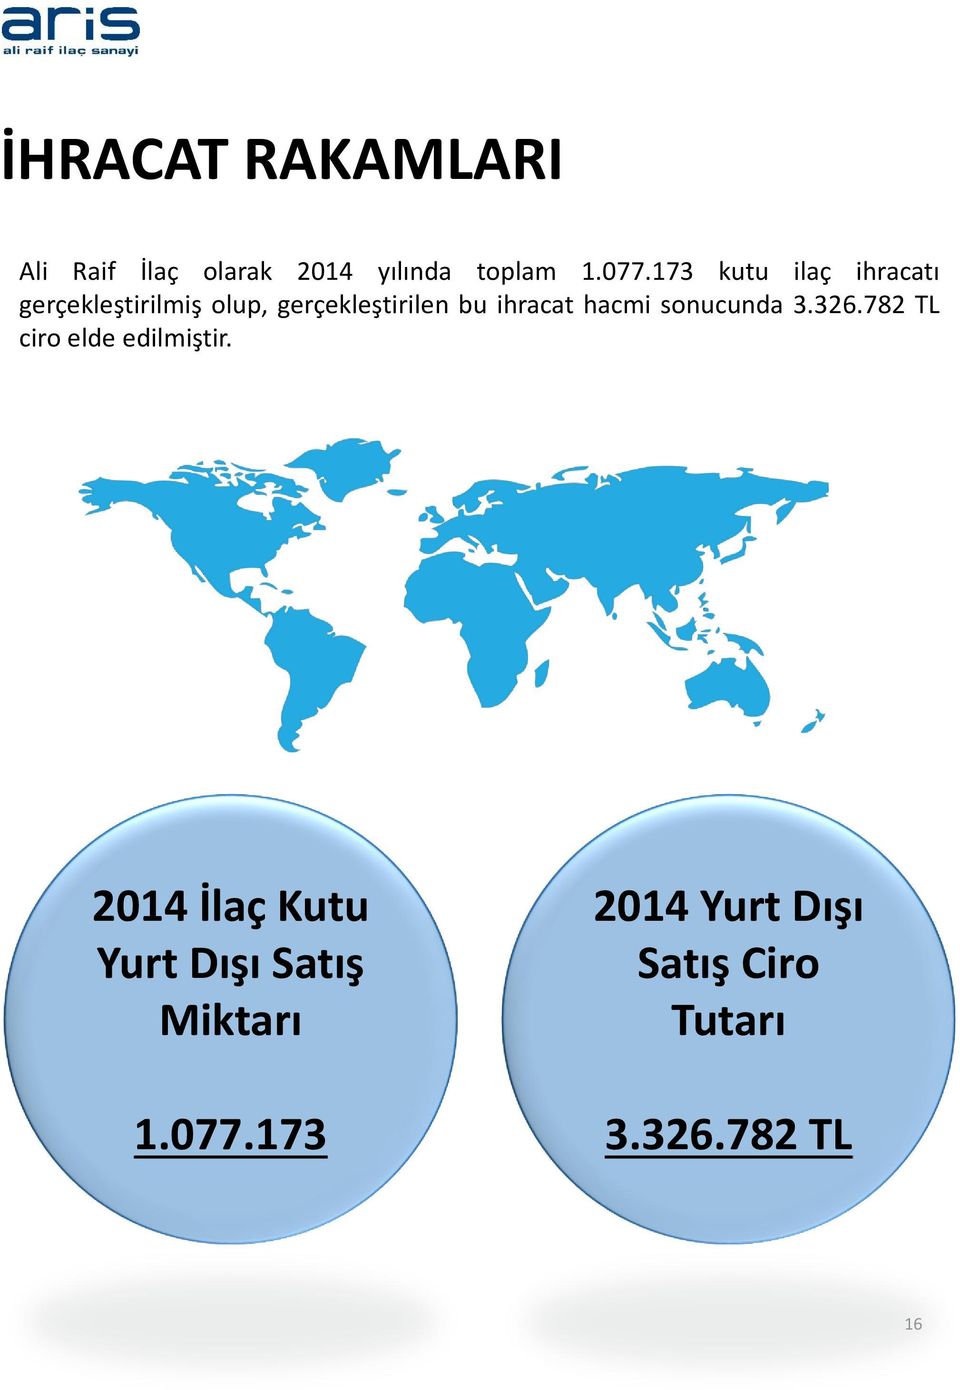 ihracat hacmi sonucunda 3.326.782 TL ciro elde edilmiştir.